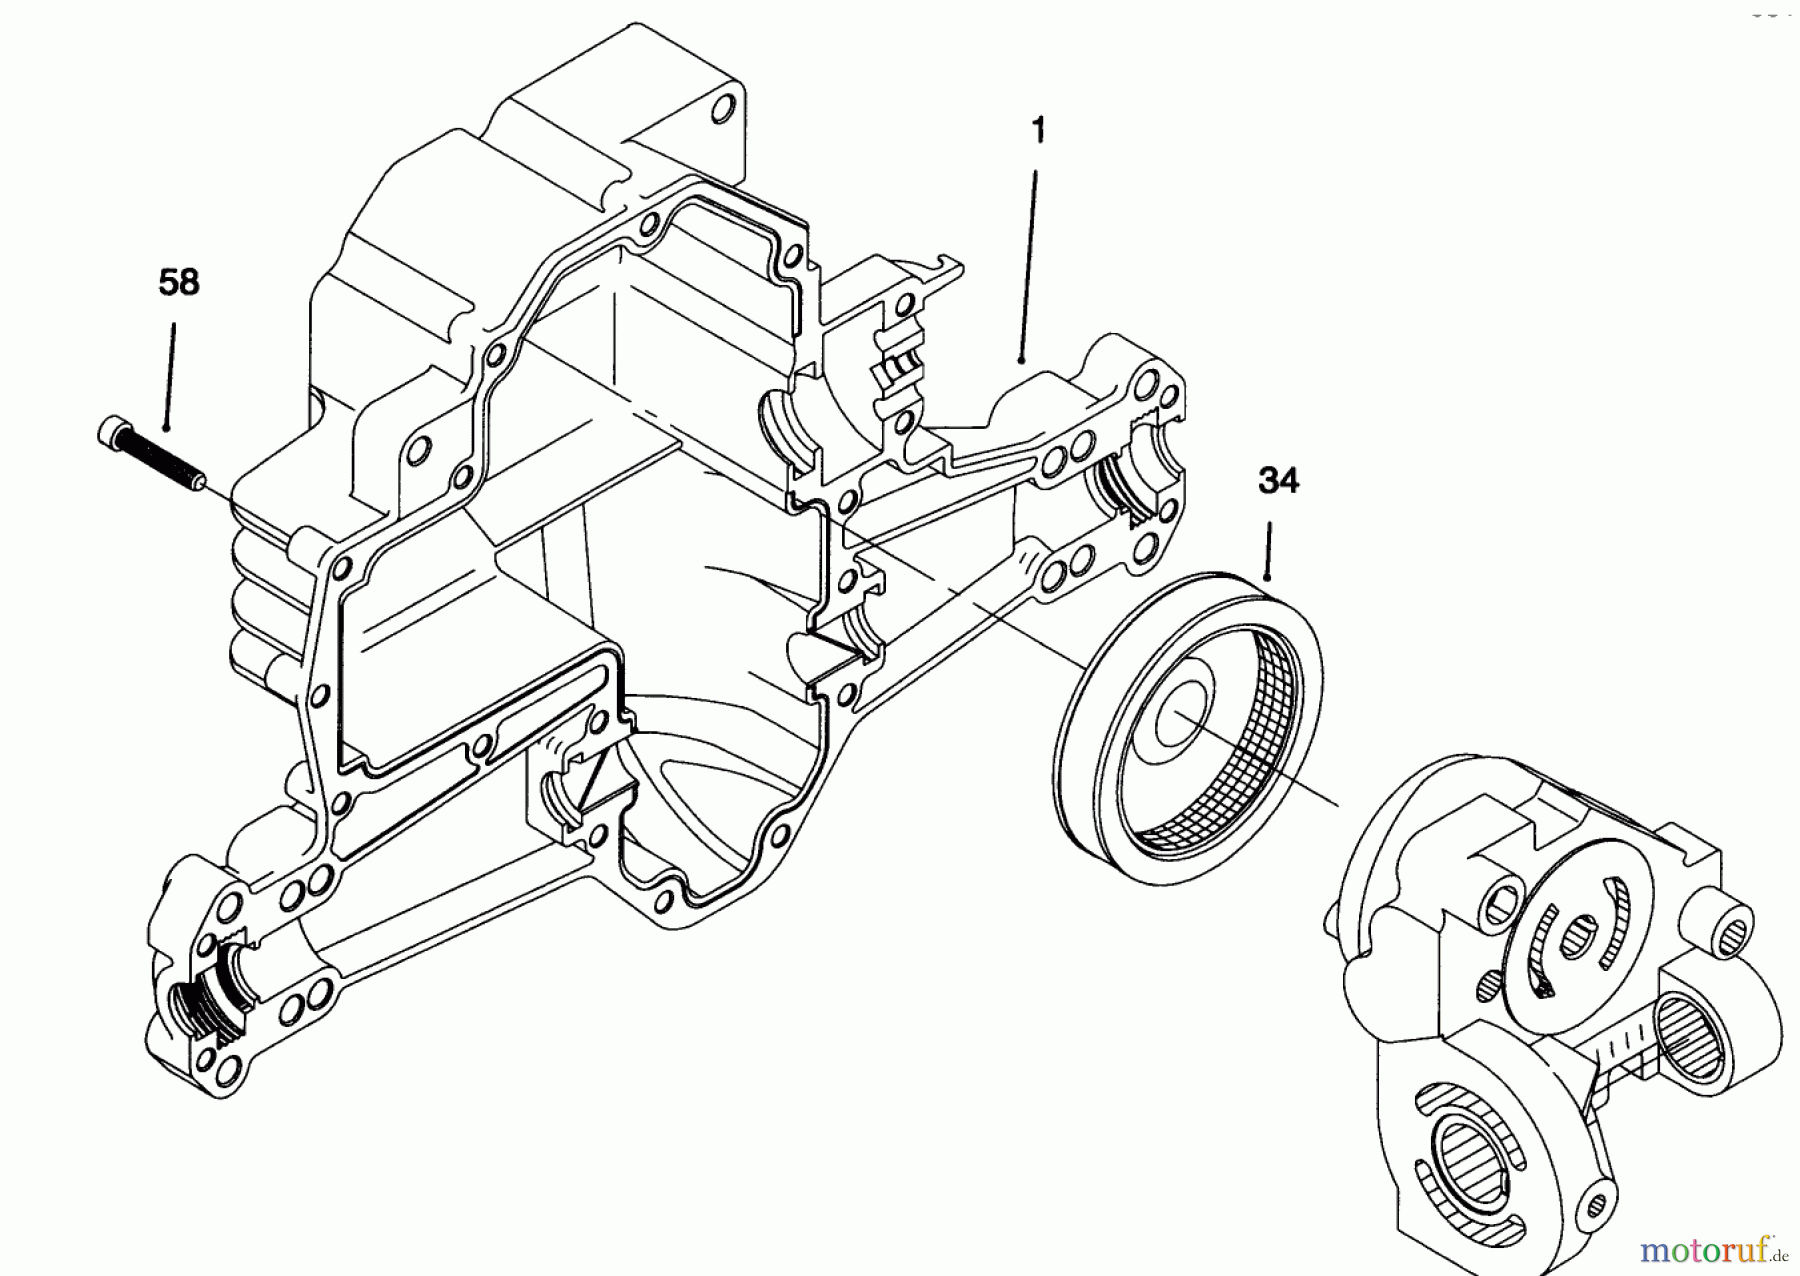  Toro Neu Mowers, Lawn & Garden Tractor Seite 1 71192 (15-44HXL) - Toro 15-44HXL Lawn Tractor, 1995 (5900001-5999999) HYDRO TRANSAXLE ASSEMBLY #4